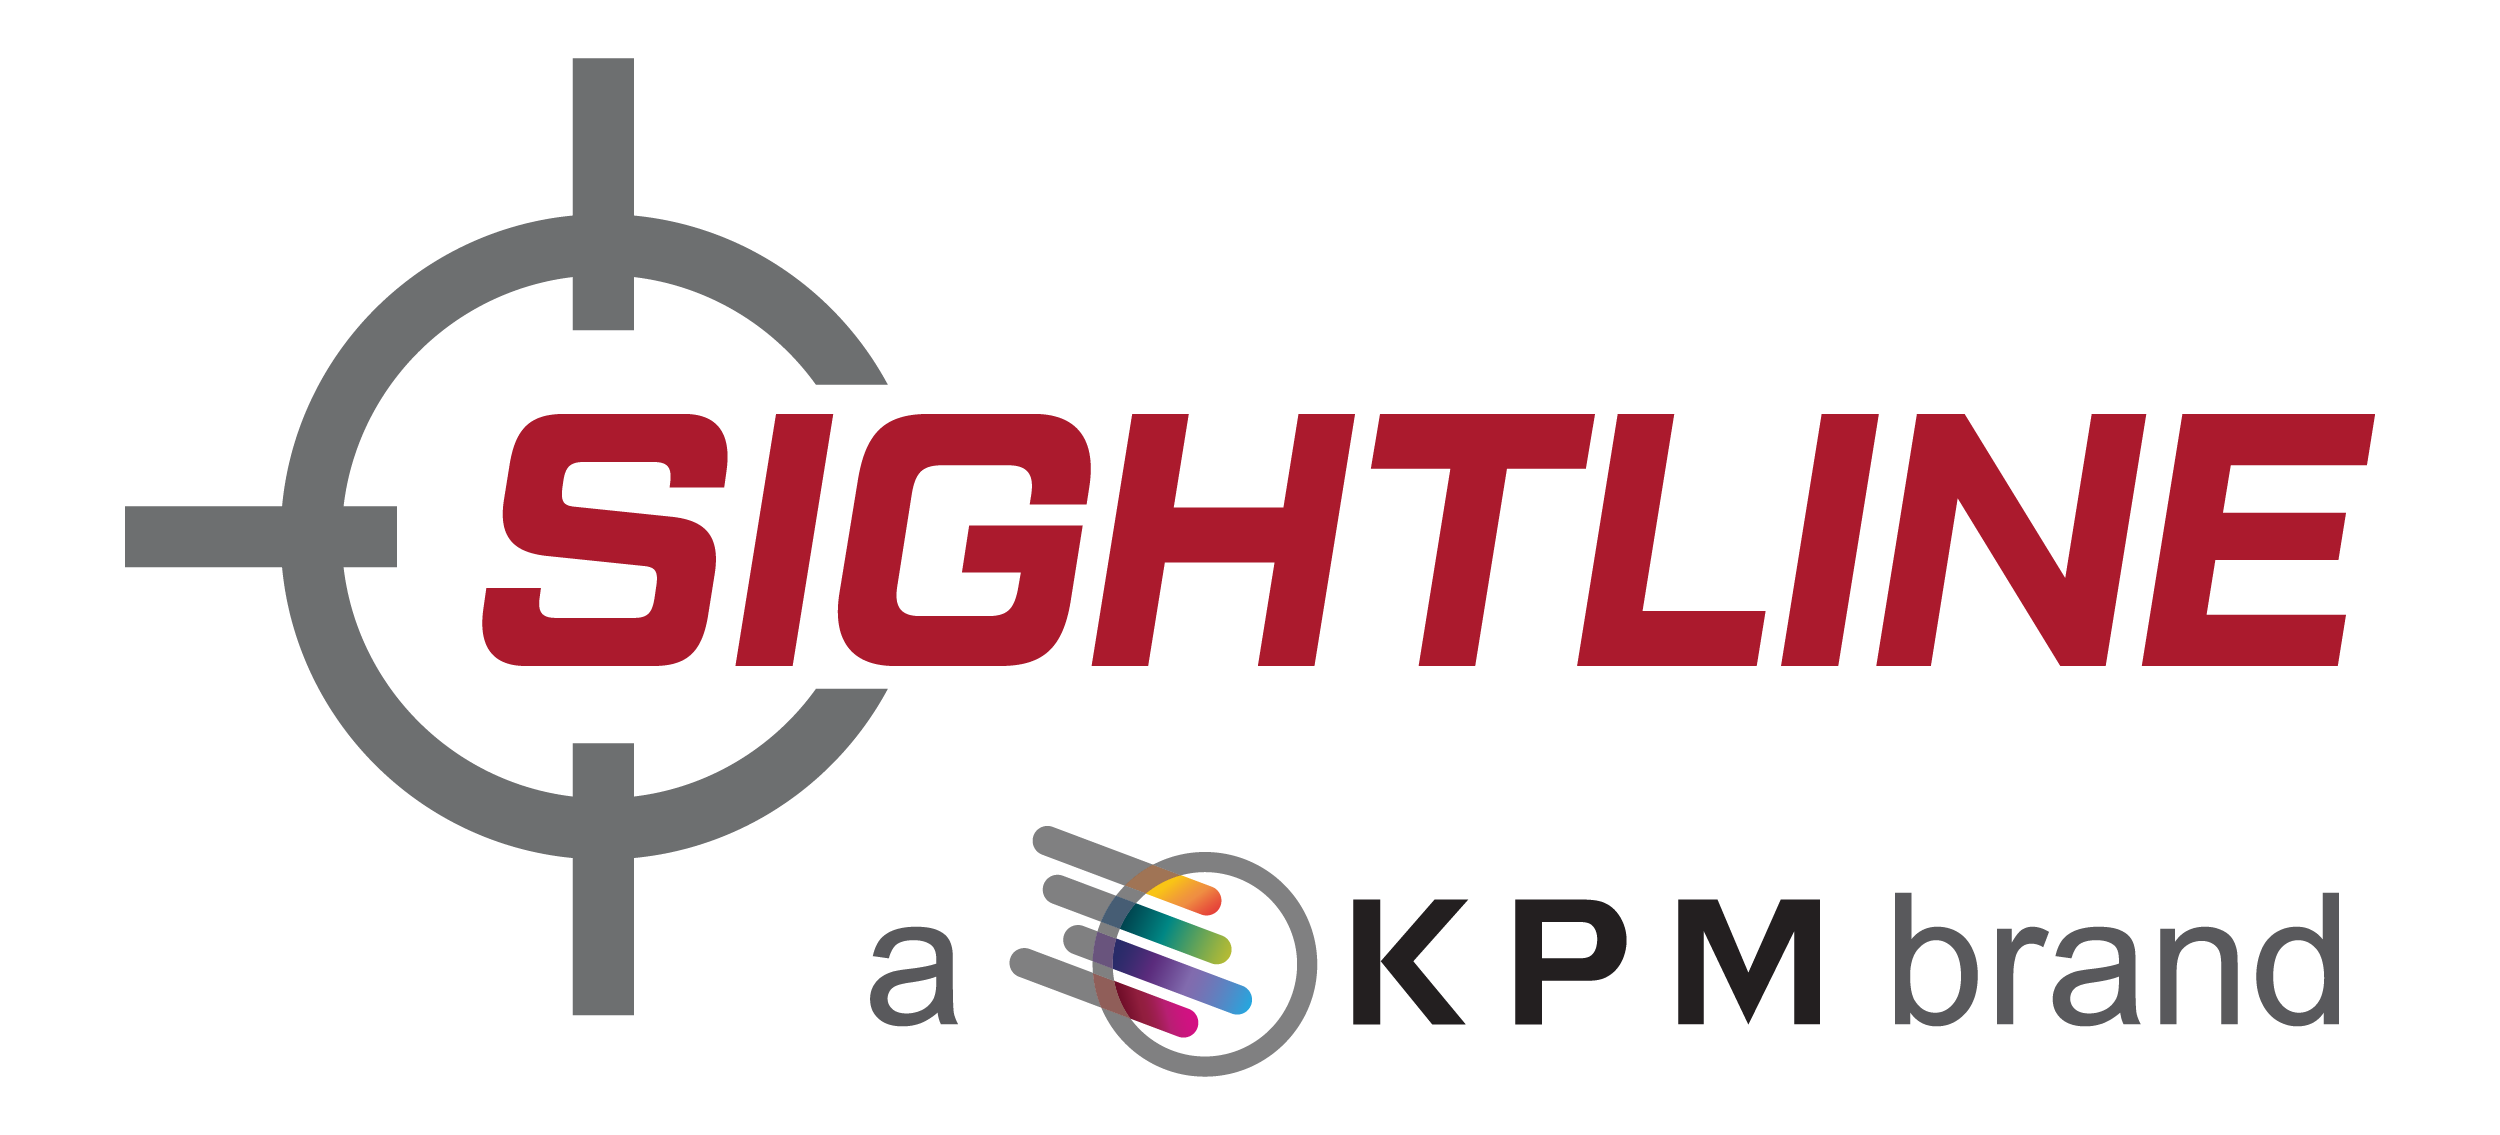 Sightline kpm